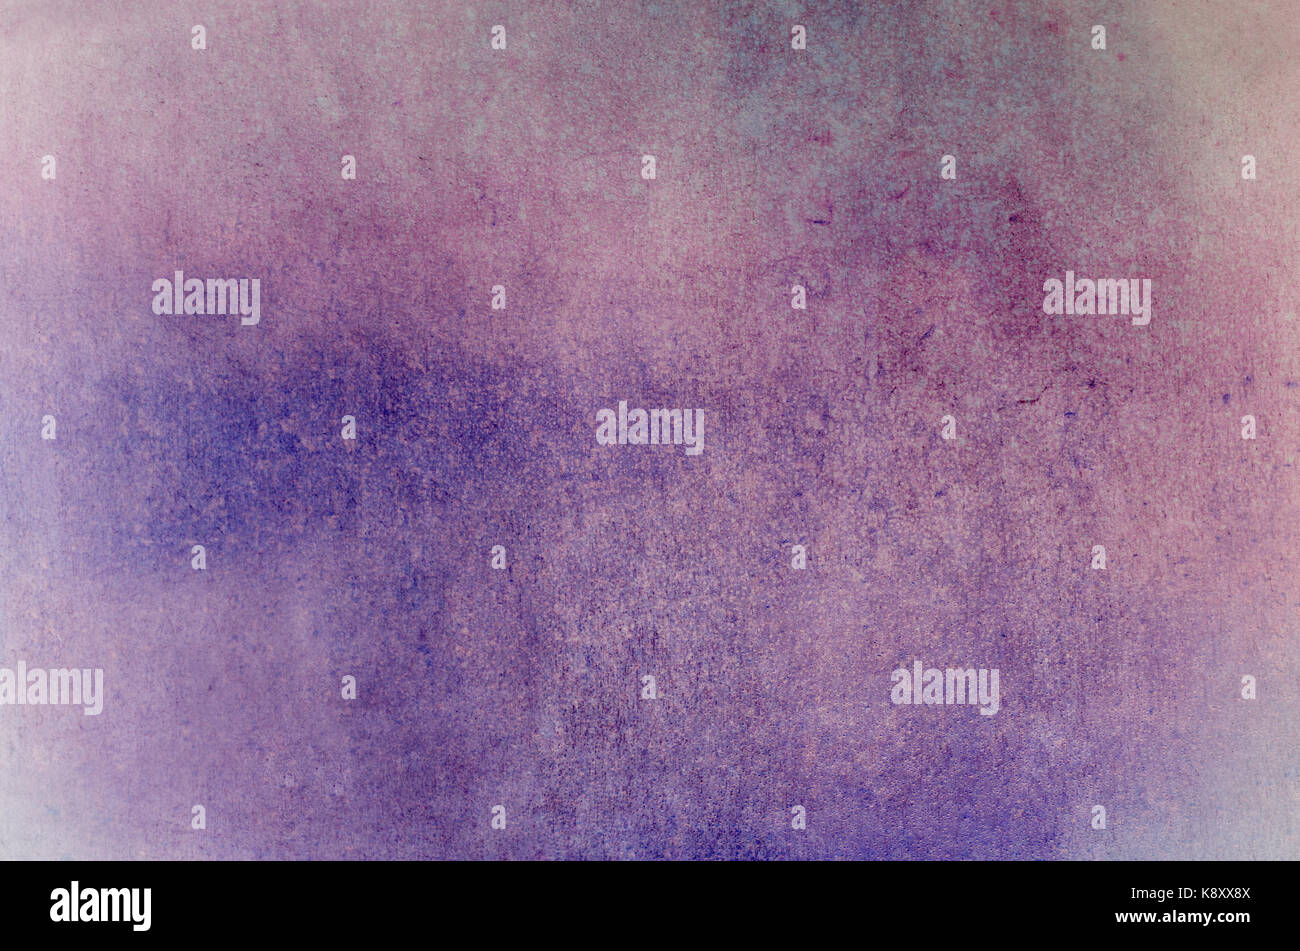 La combinazione di sfondo una ruvida, lacunose grunge texture con gocce di pioggia in fusione di colori rosa e viola, Foto Stock